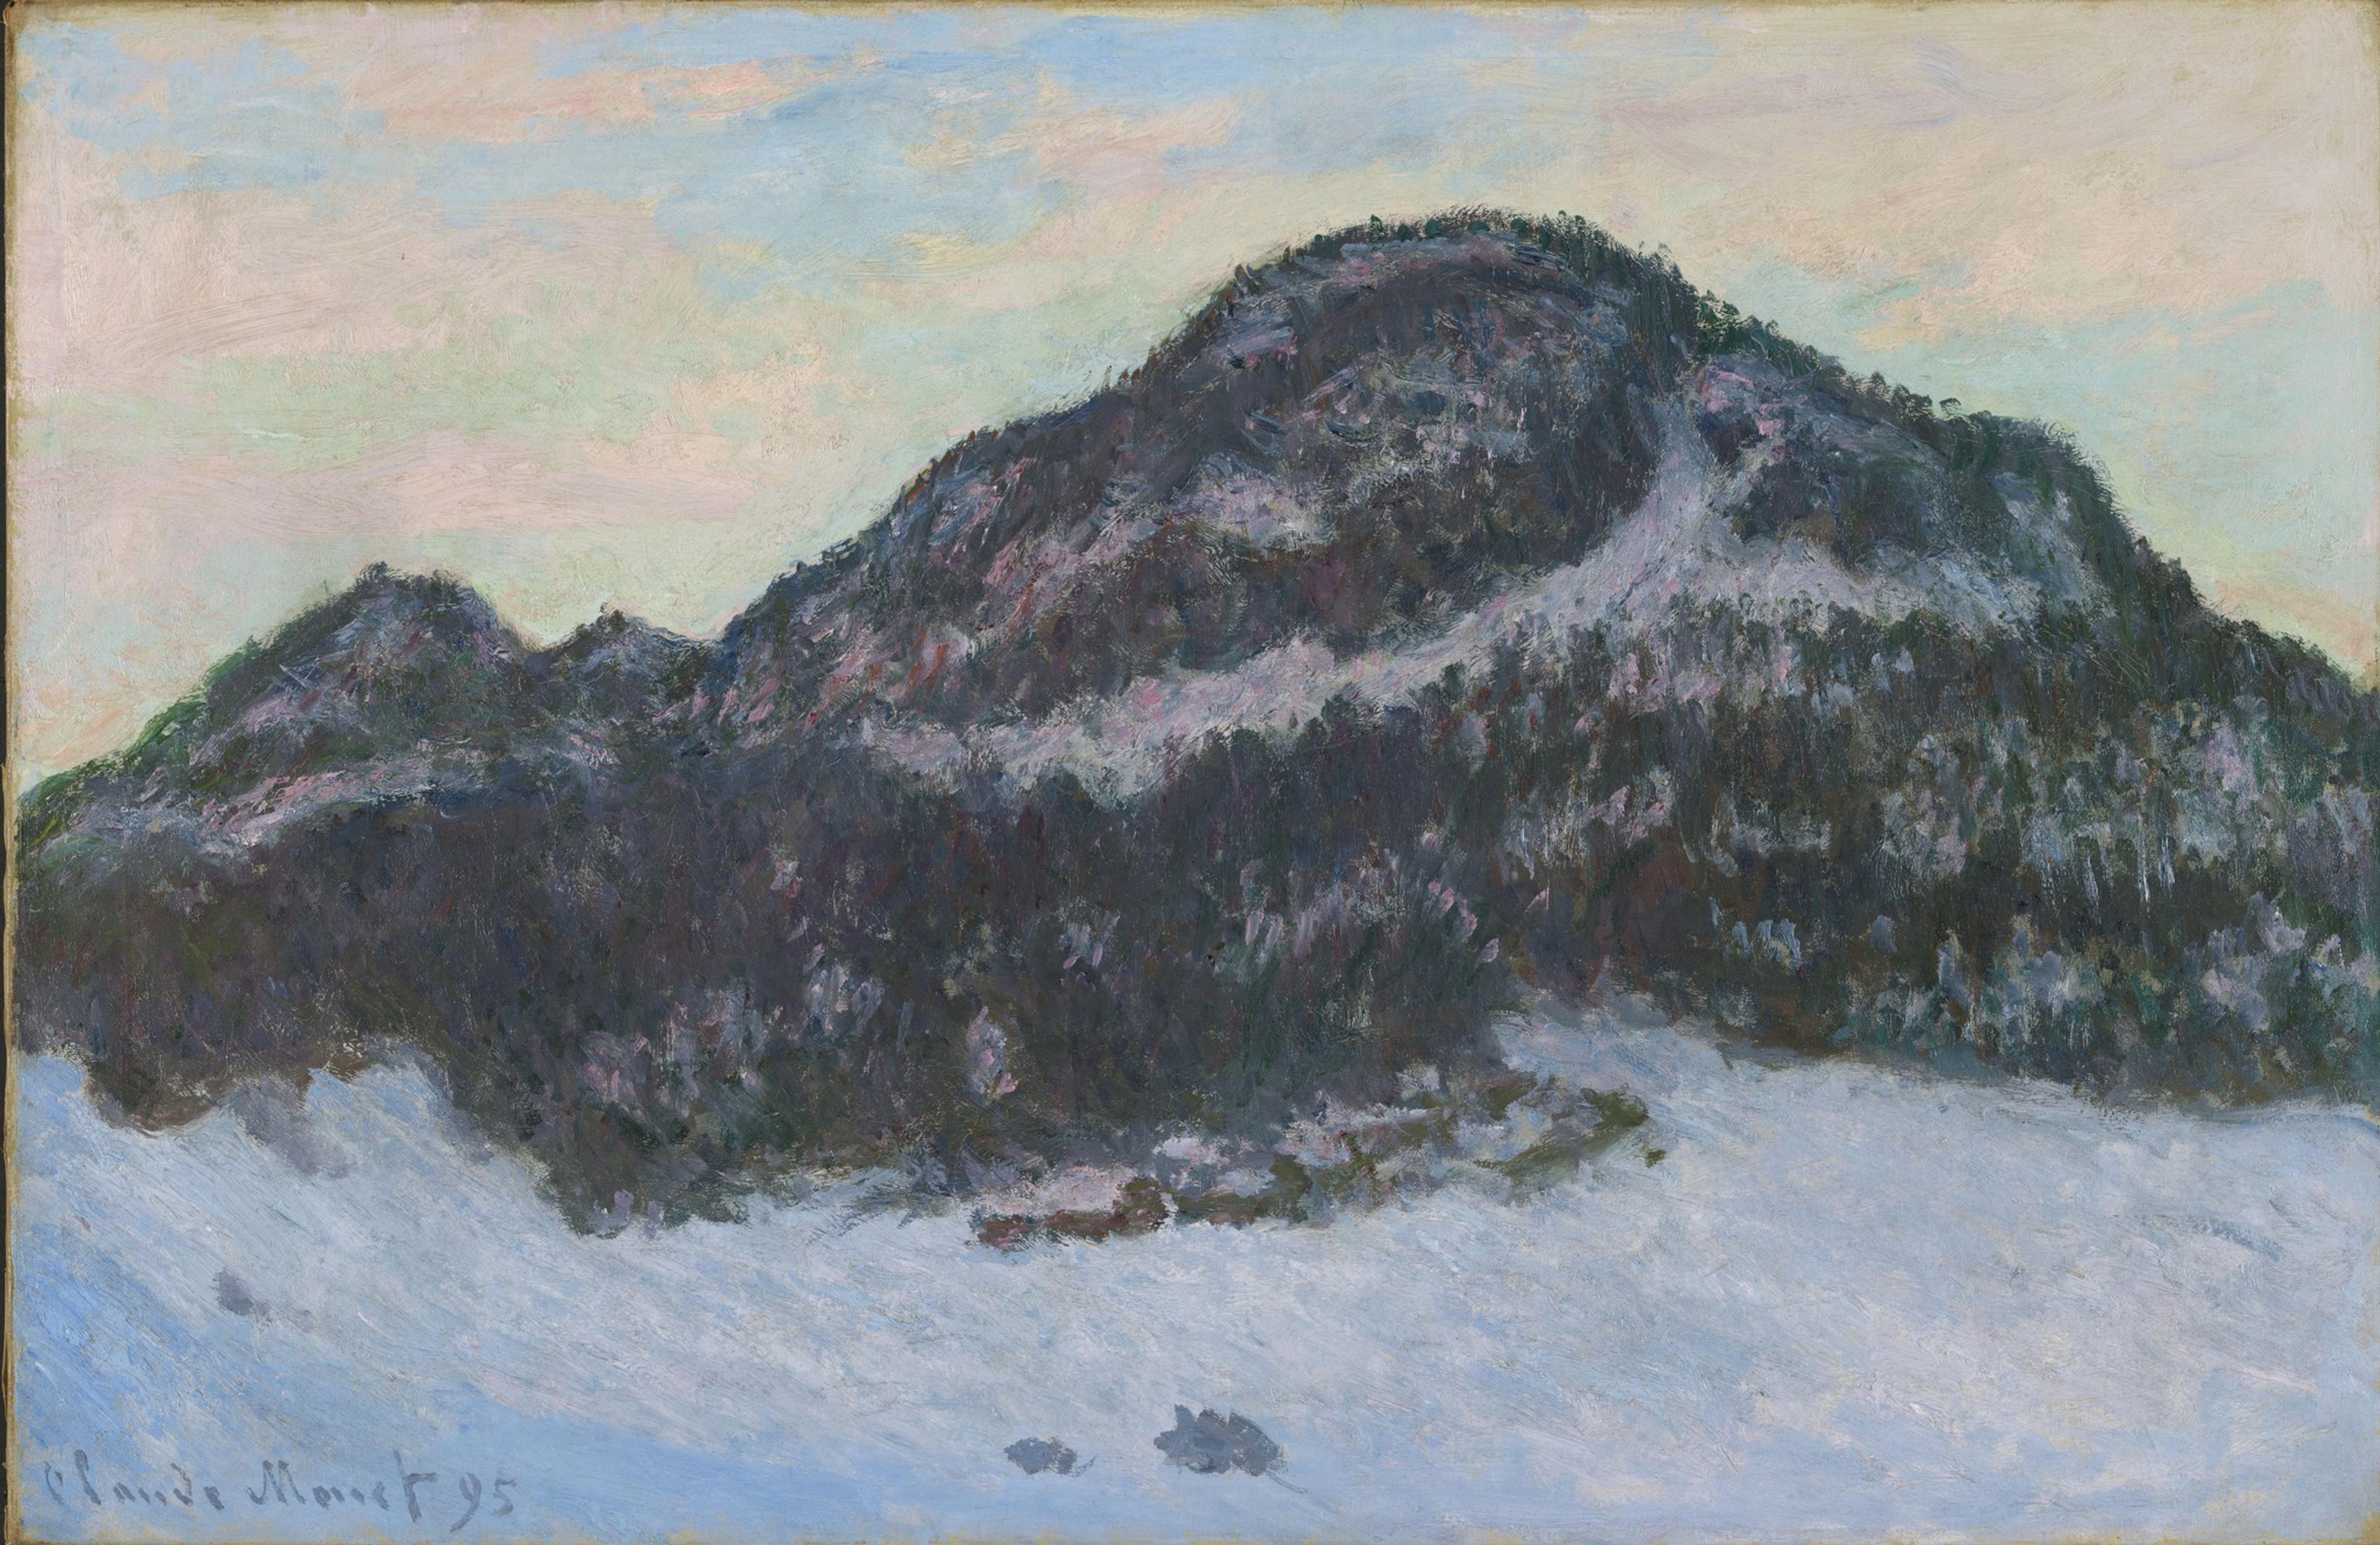 Et maleri av et landskap, med et mørkt fjell dominerende midt i bildet, mot en lys himmel og snødekket forgrunn.